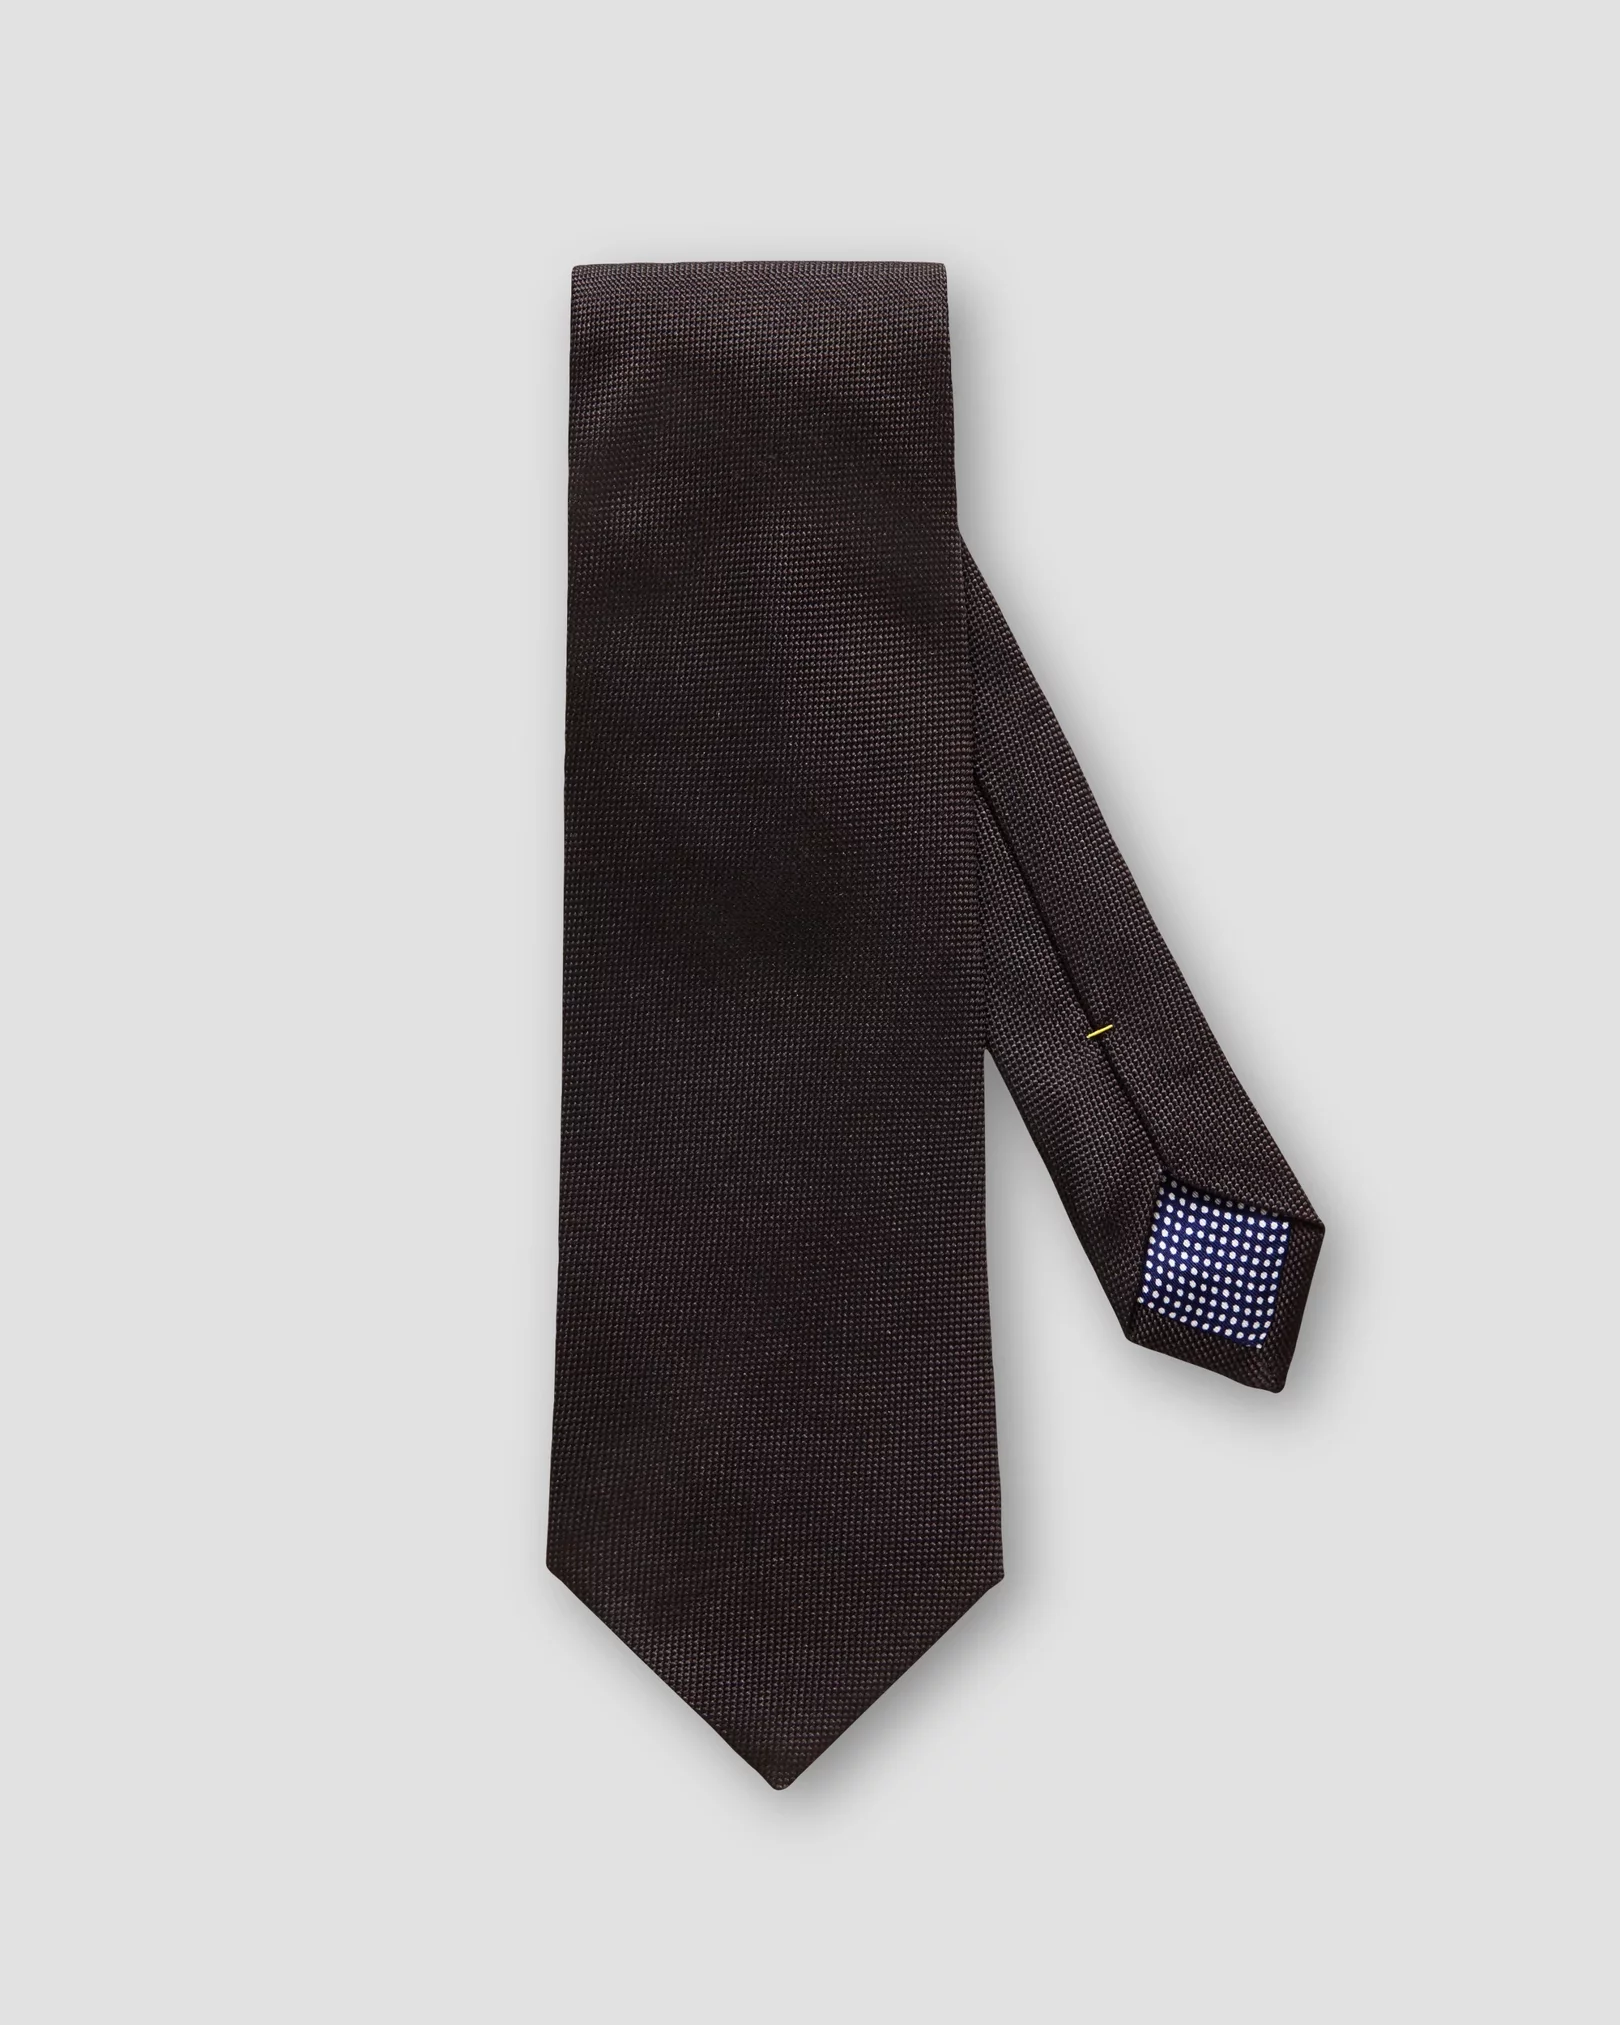 Cravate noire en soie nattée